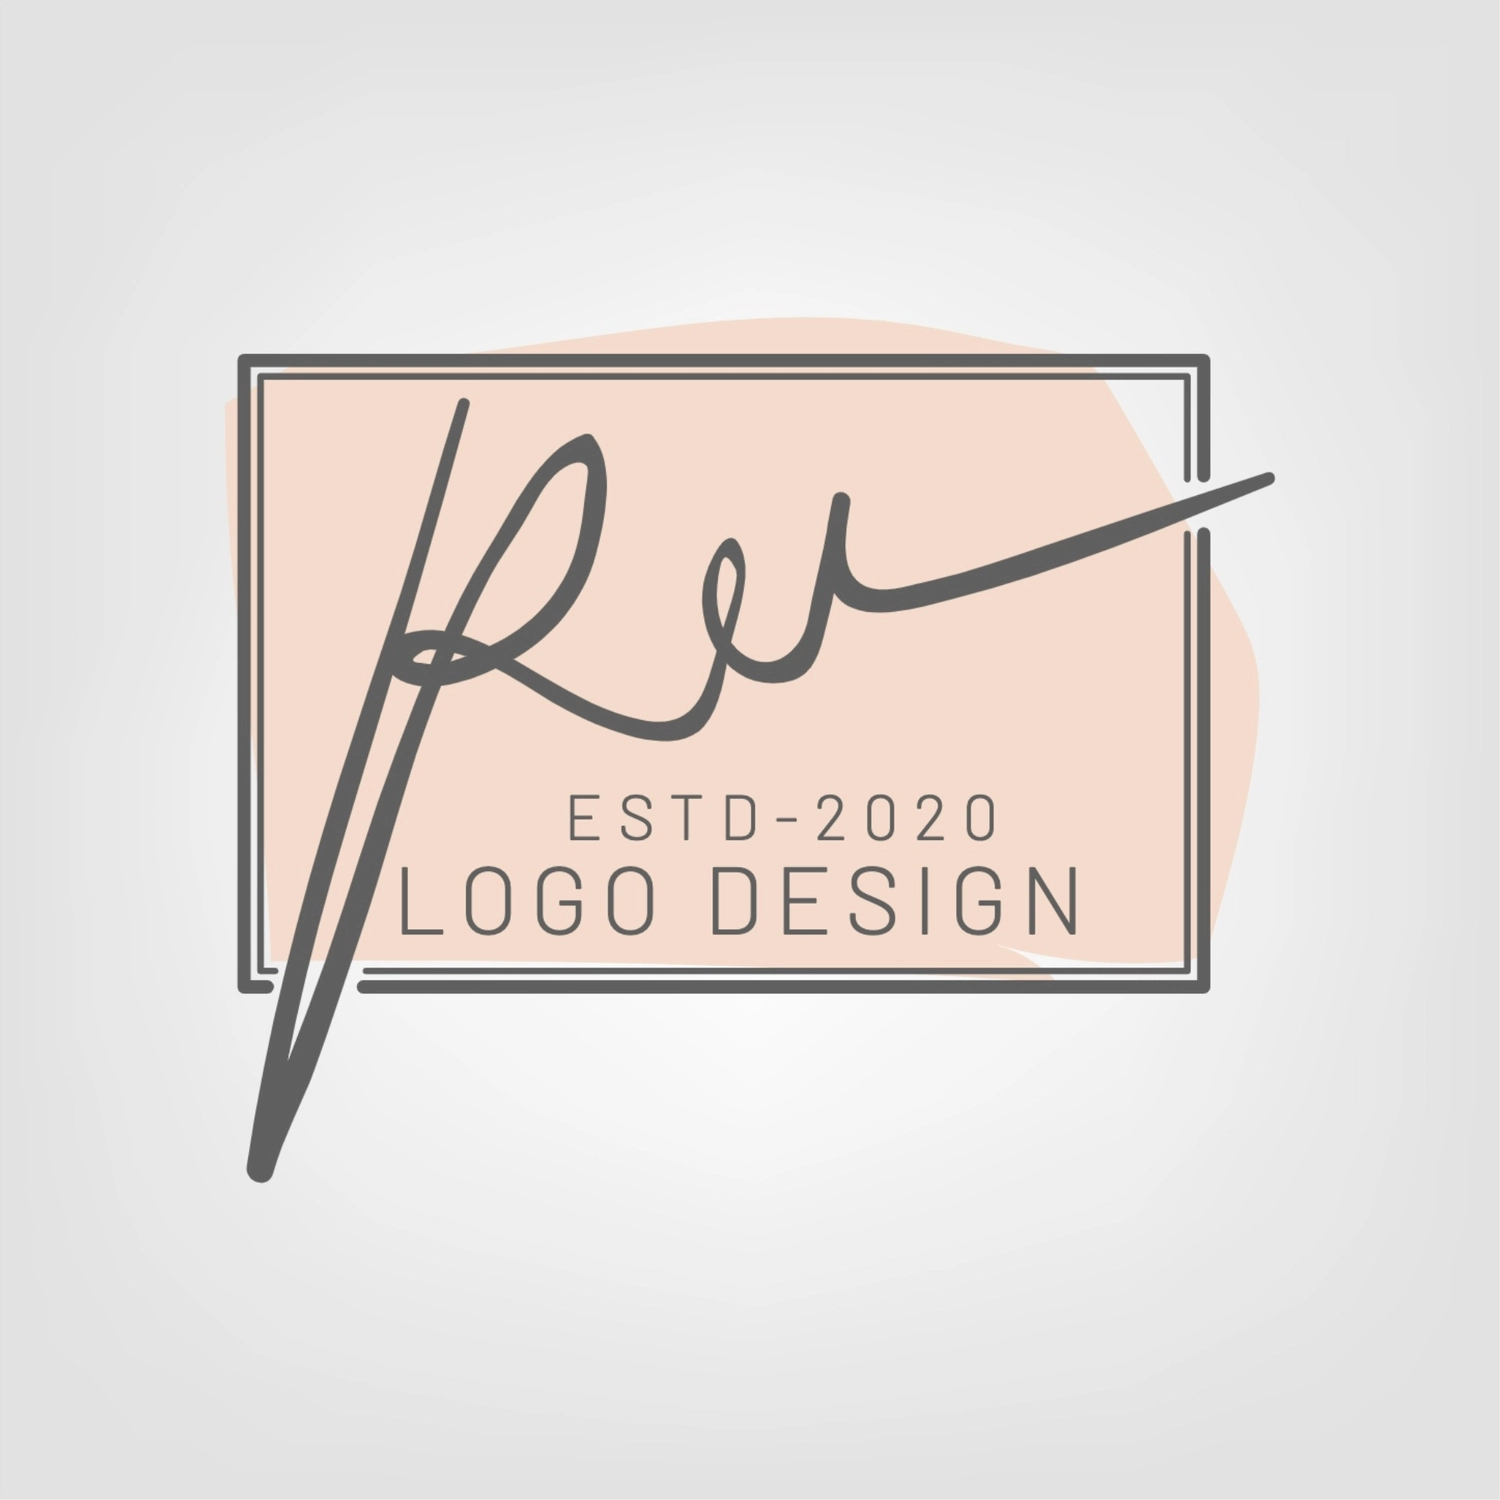 筆記体のロゴ, Hợp thời trang, tạo ra, thiết kế, Logo mẫu